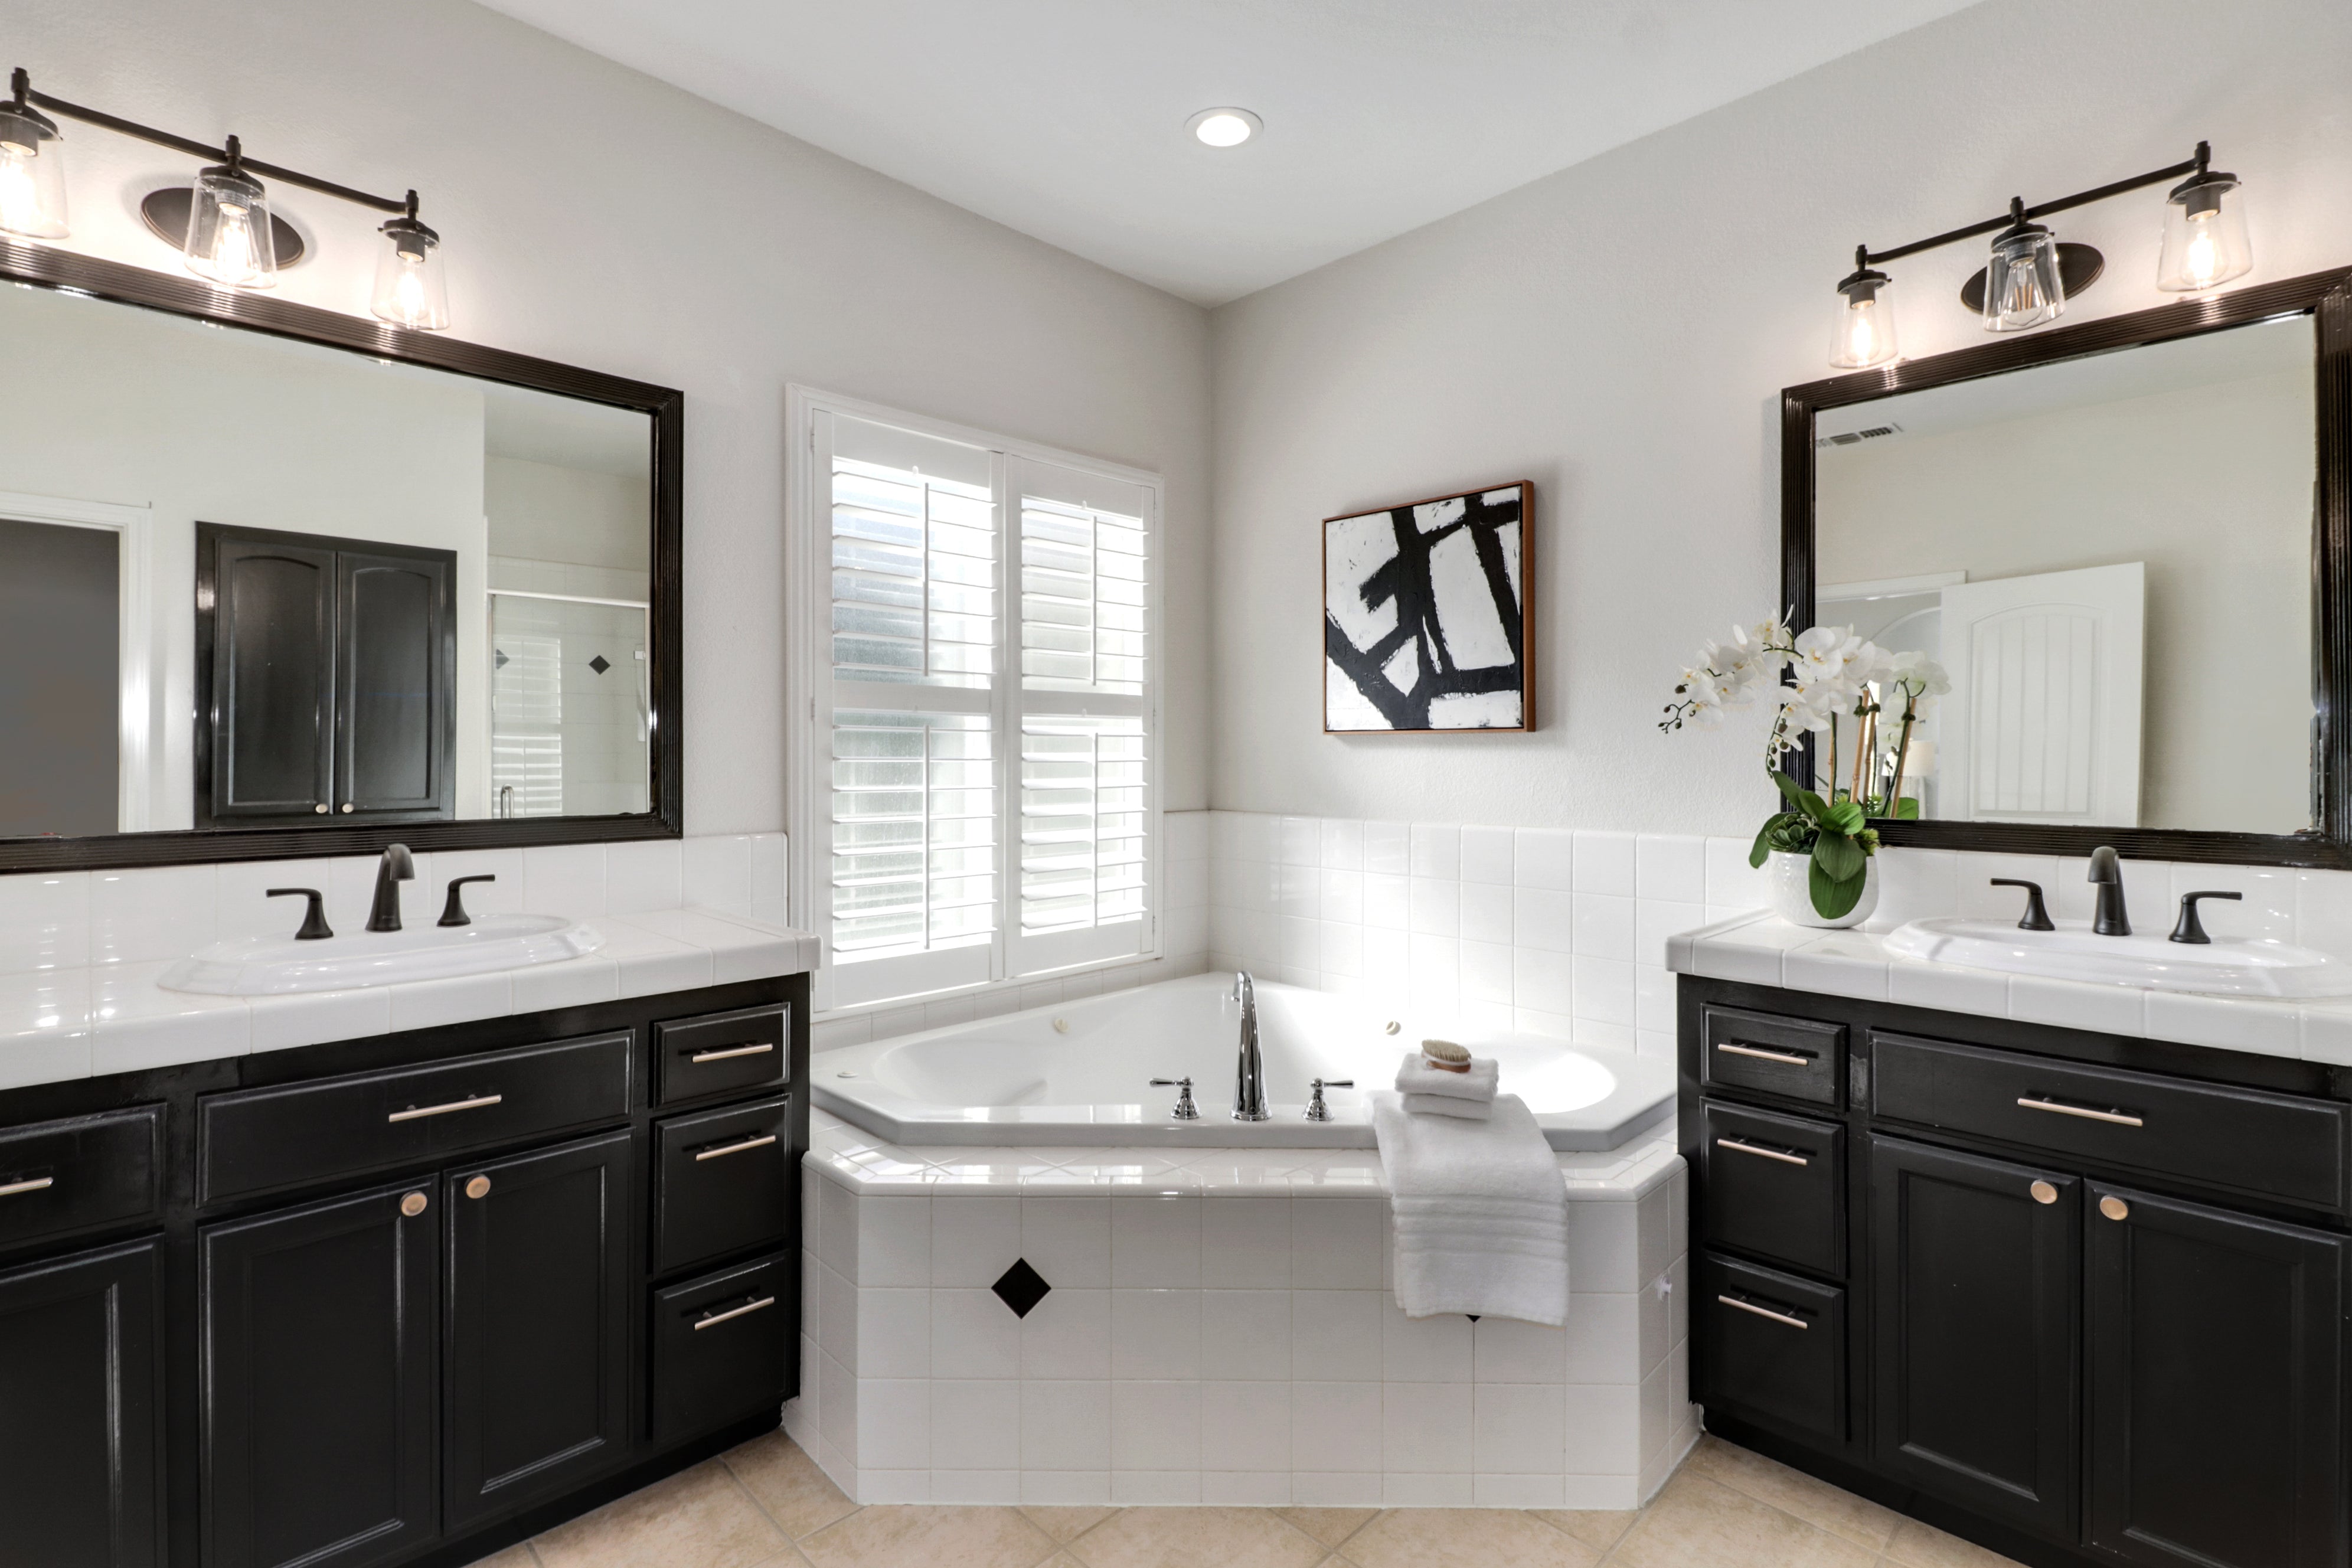 Premiere Home Staging Projects | Bathroom interior design idea - Barton Rd, Granite Bay